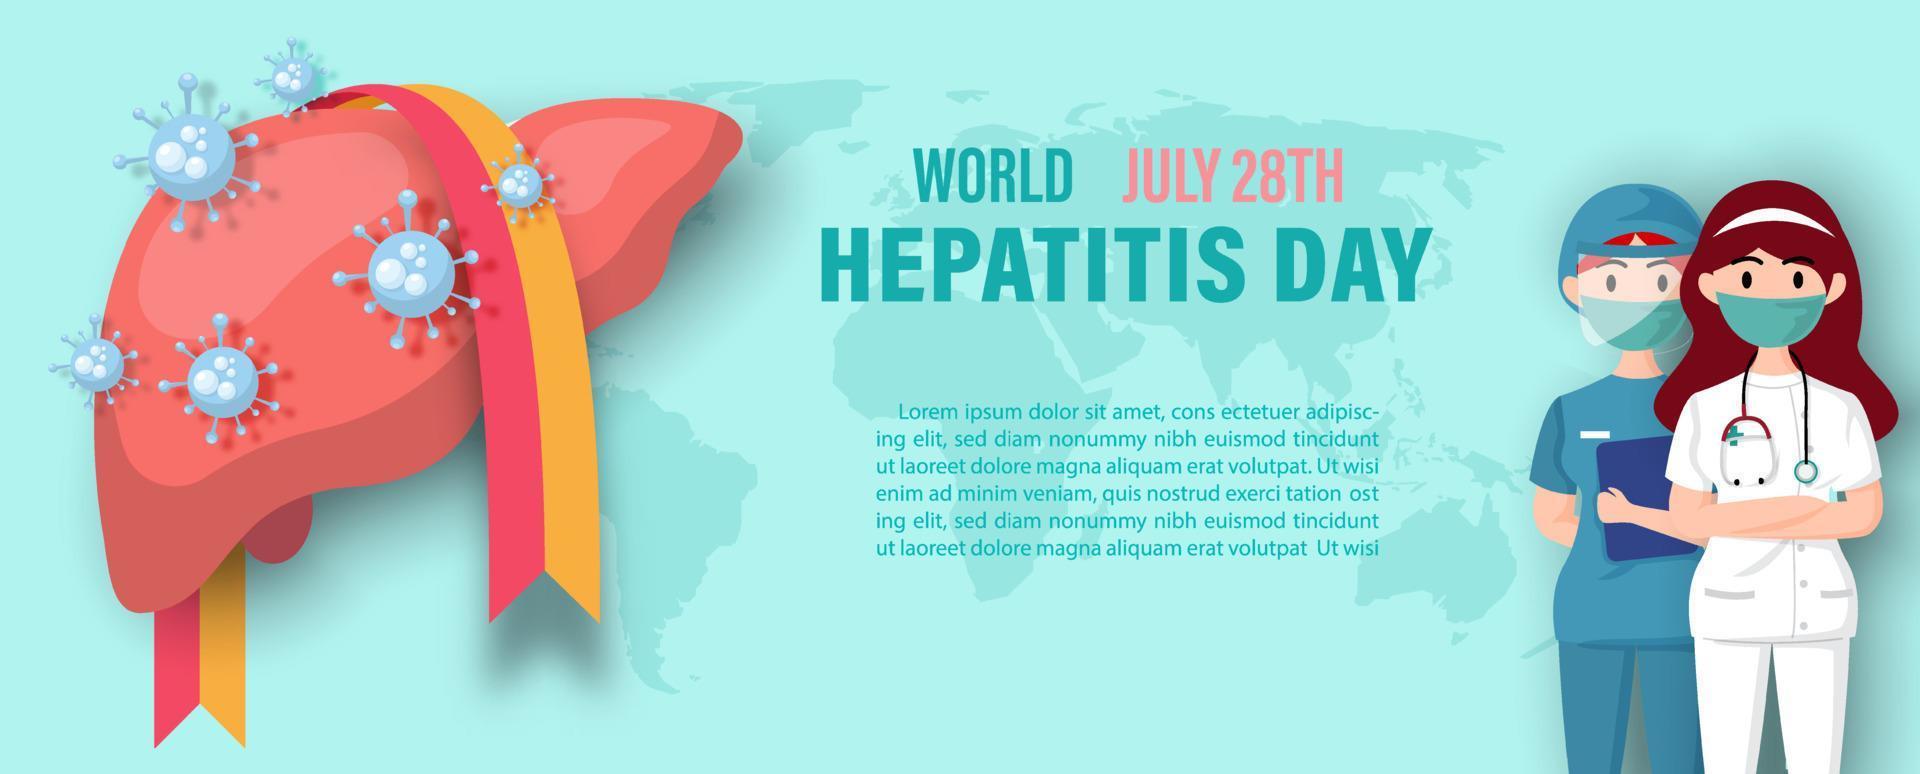 hígado humano con símbolos de virus, cinta de campaña, redacción del día mundial de la hepatitis y médico en caricatura en el mapa mundial y fondo verde claro. vector